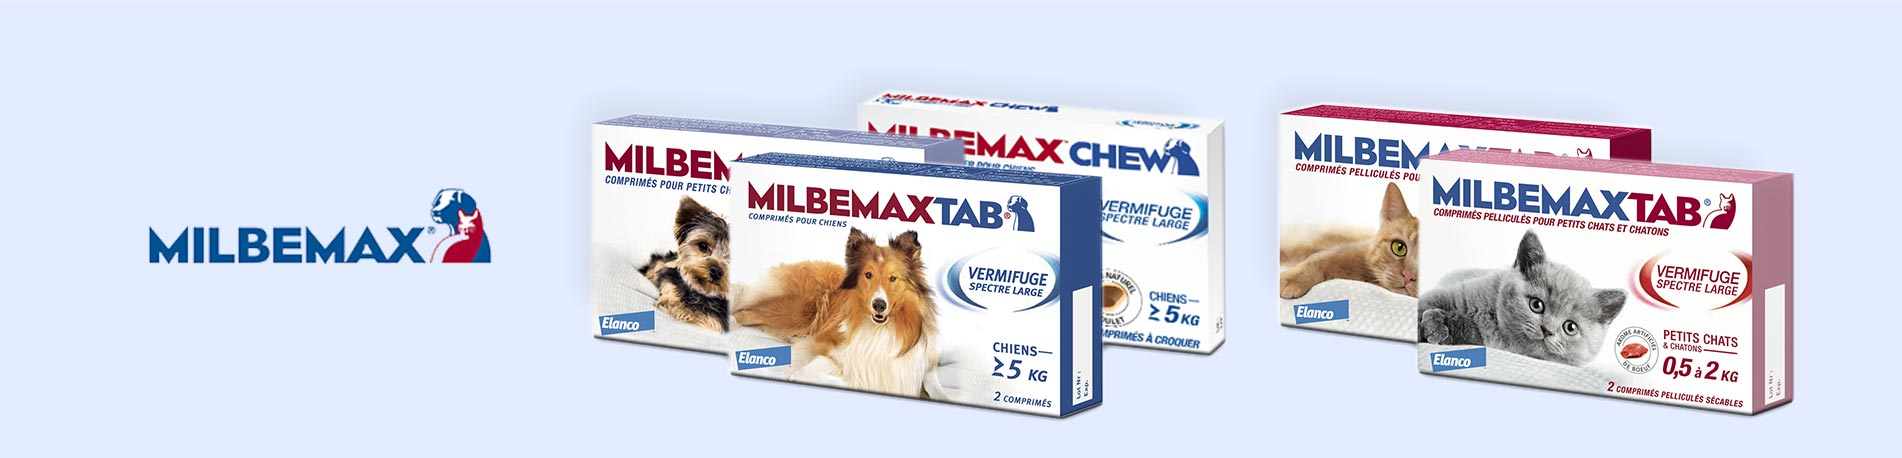 Milbemax Tab vermifuge chiots et petits chiens de 0,5 à 10kg 2cps